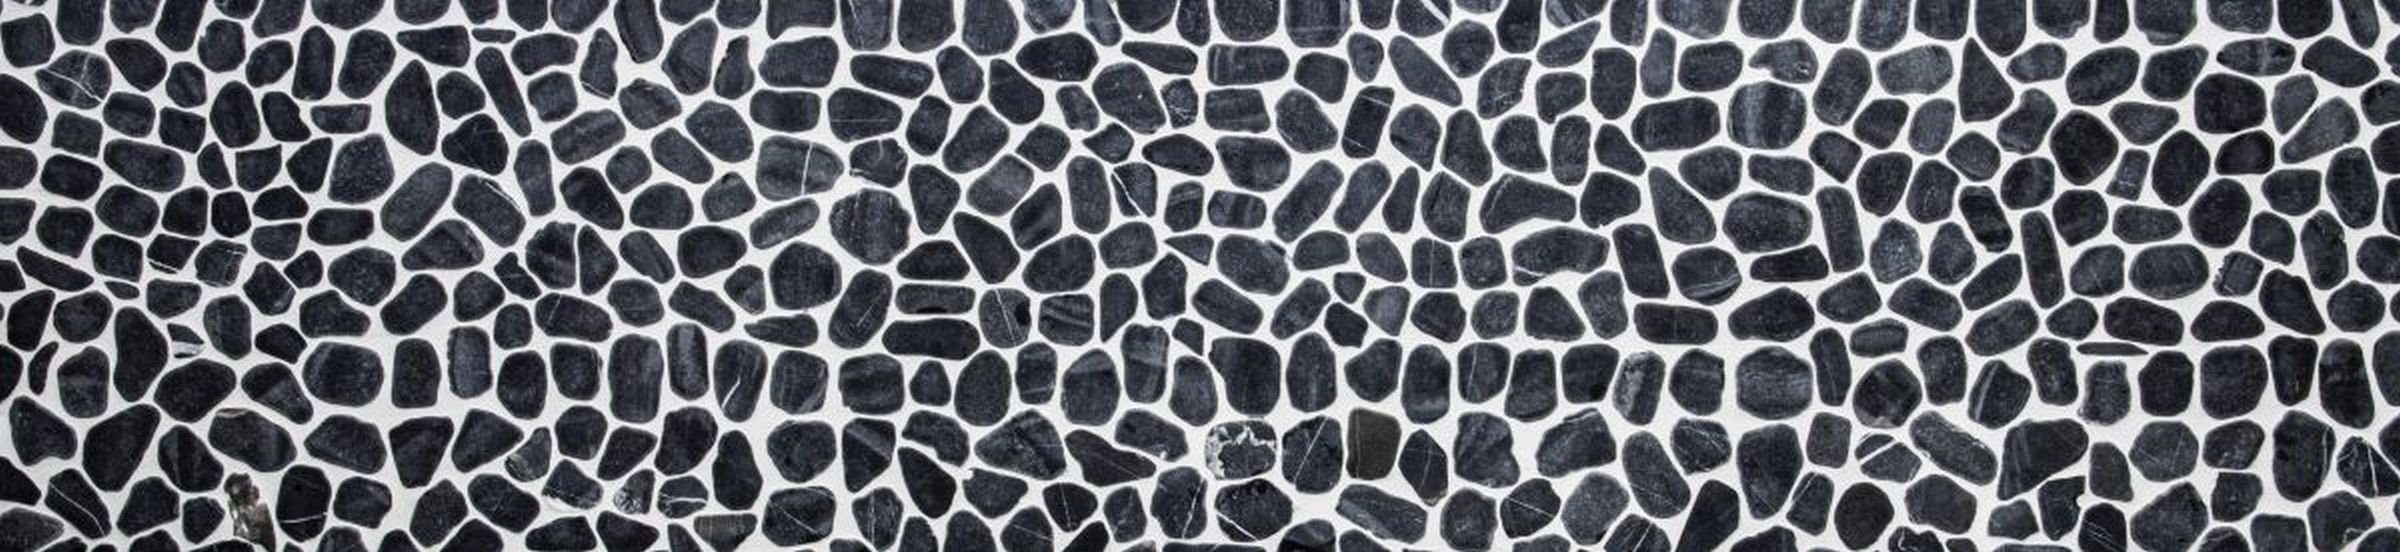 Mosani Oval 10 matt Flusskiesel / Matten Mosaikfliesen Mosaikfliesen schwarz